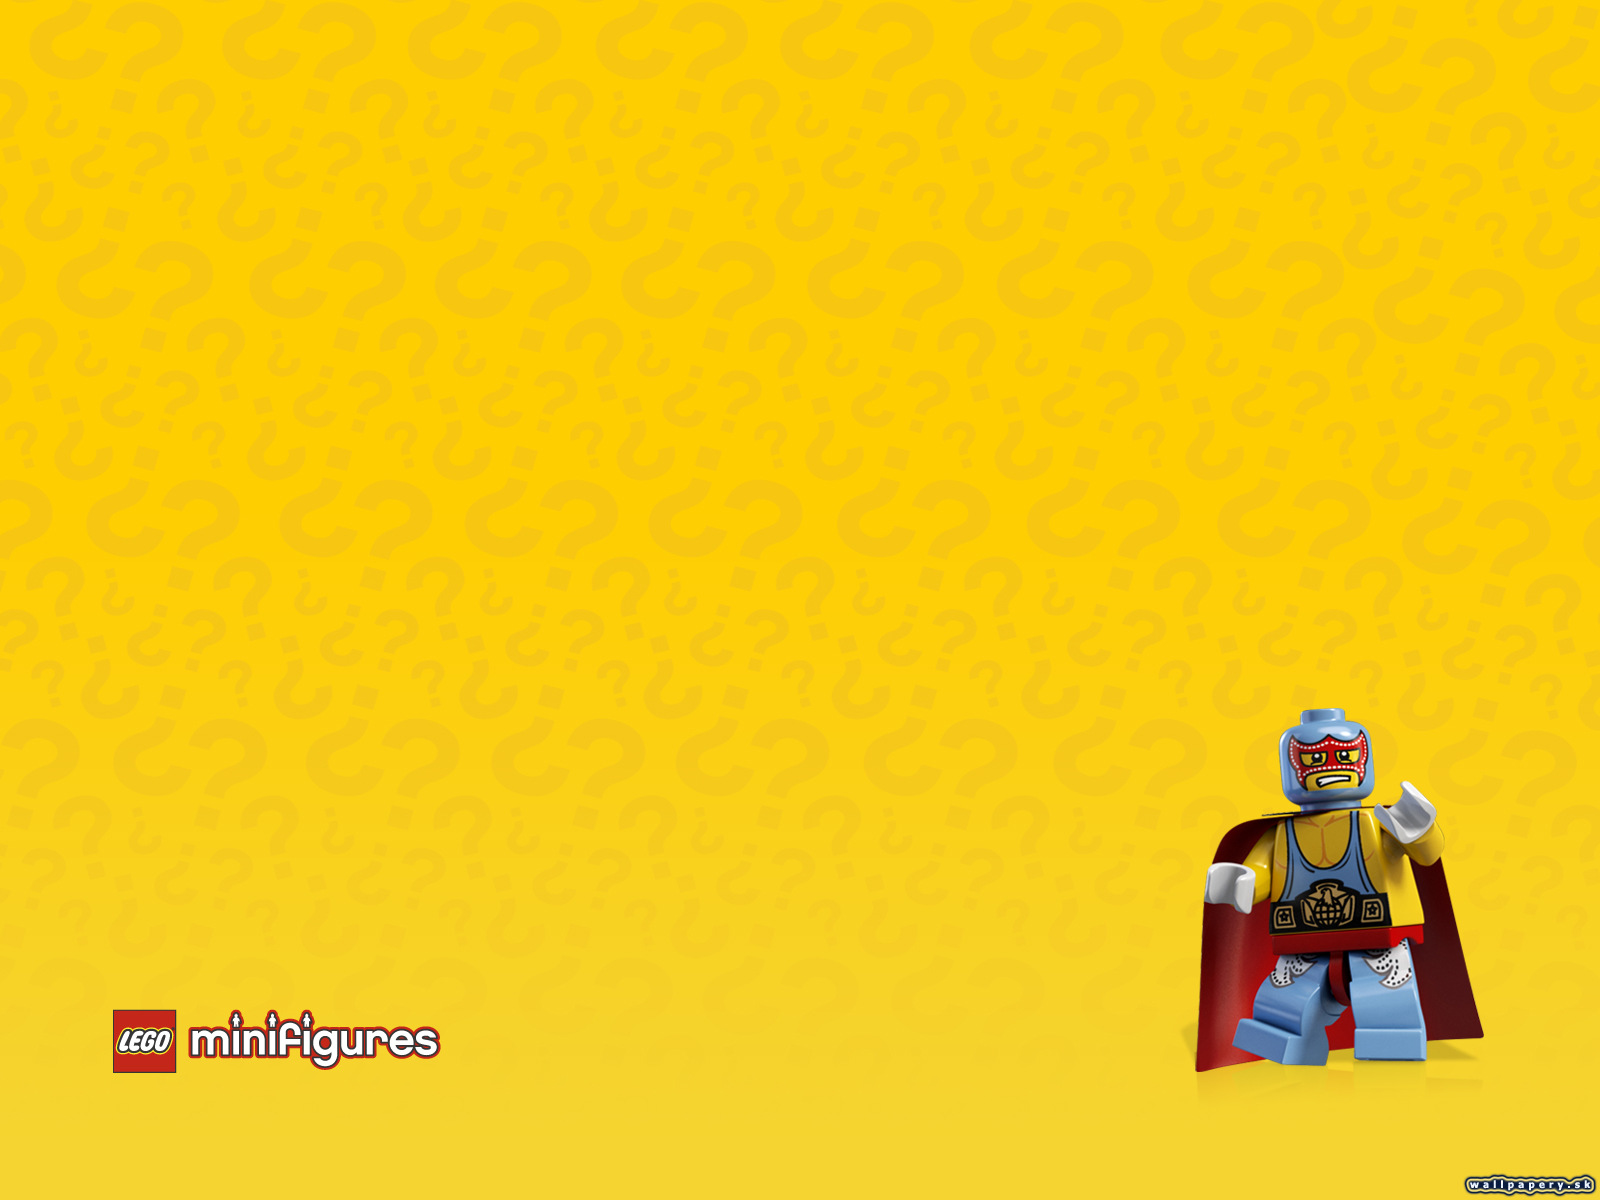 LEGO Minifigures Online - wallpaper 51